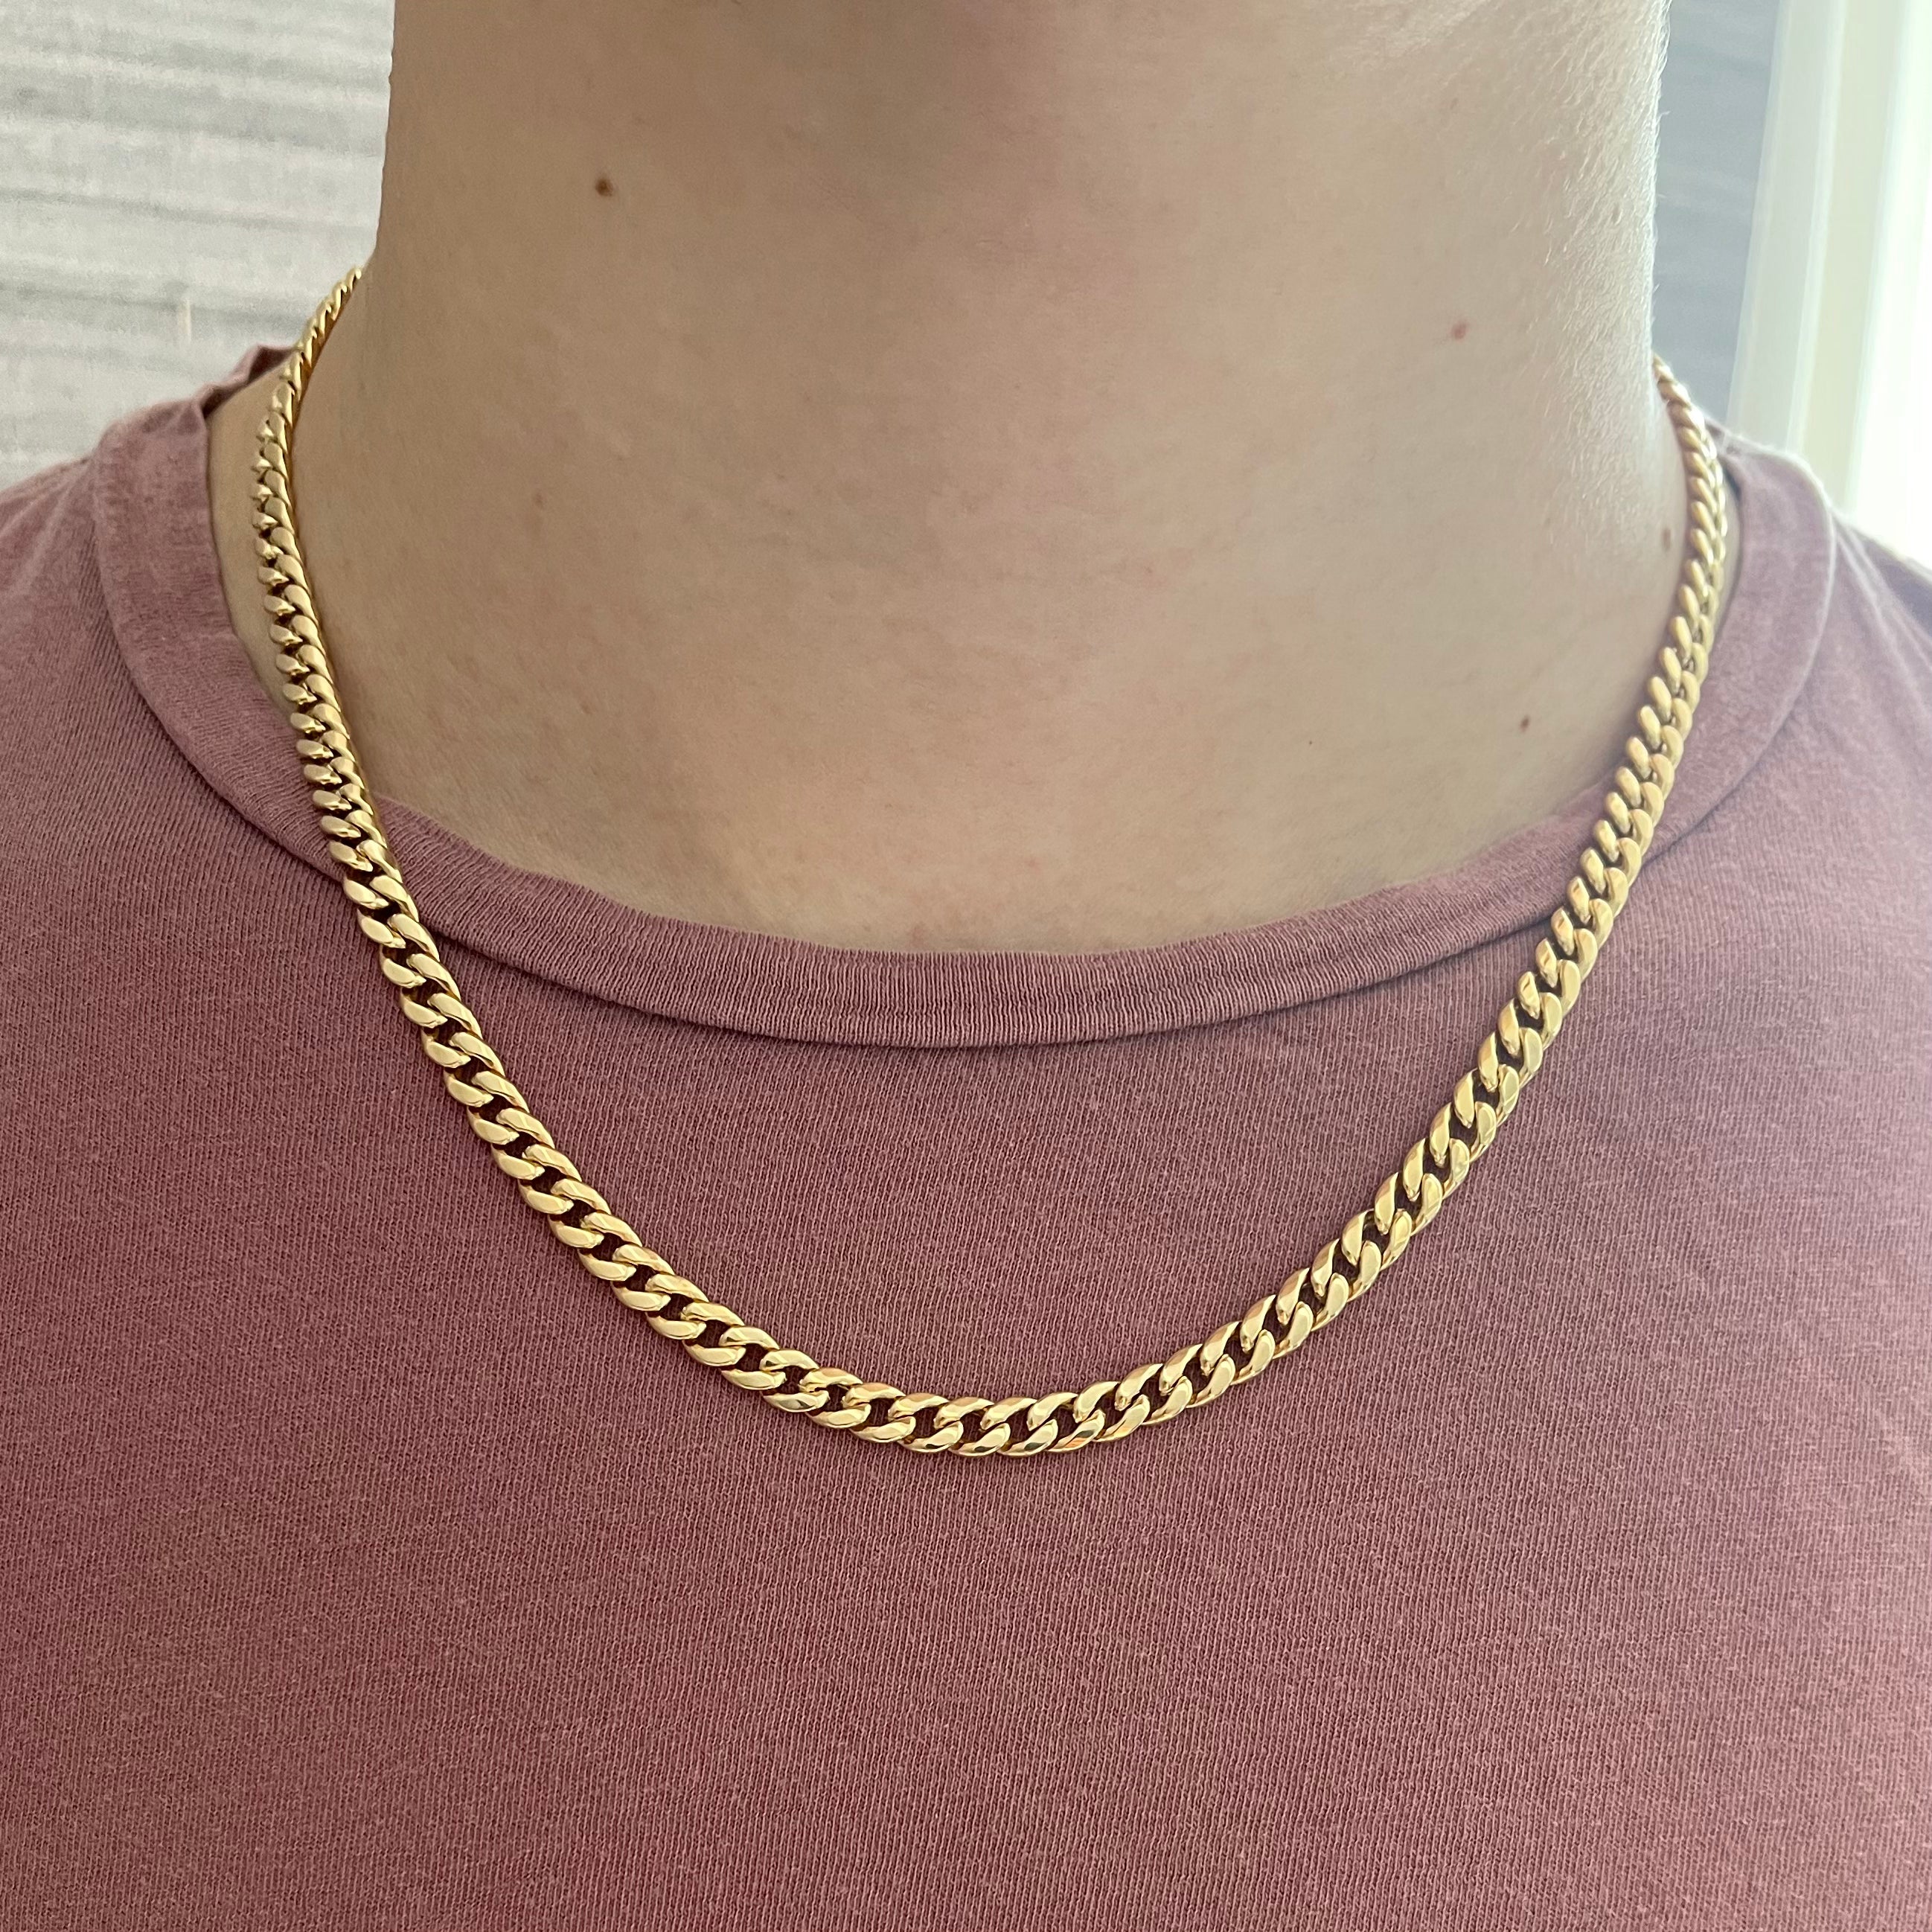 Unisex Cuban Link Chain Necklace